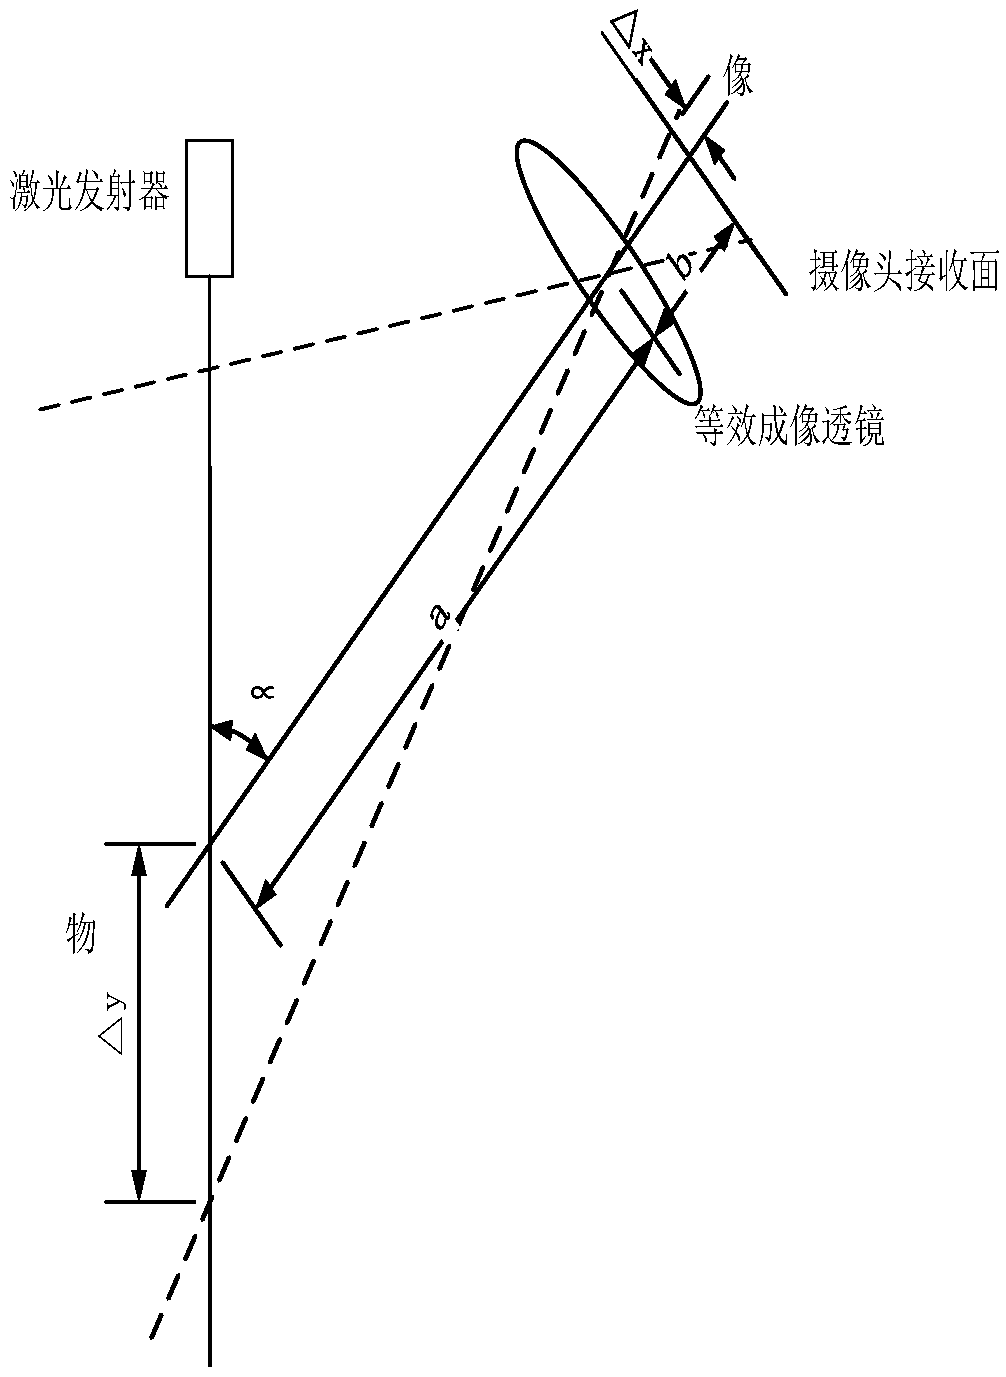 Laser ranging module and ranging method